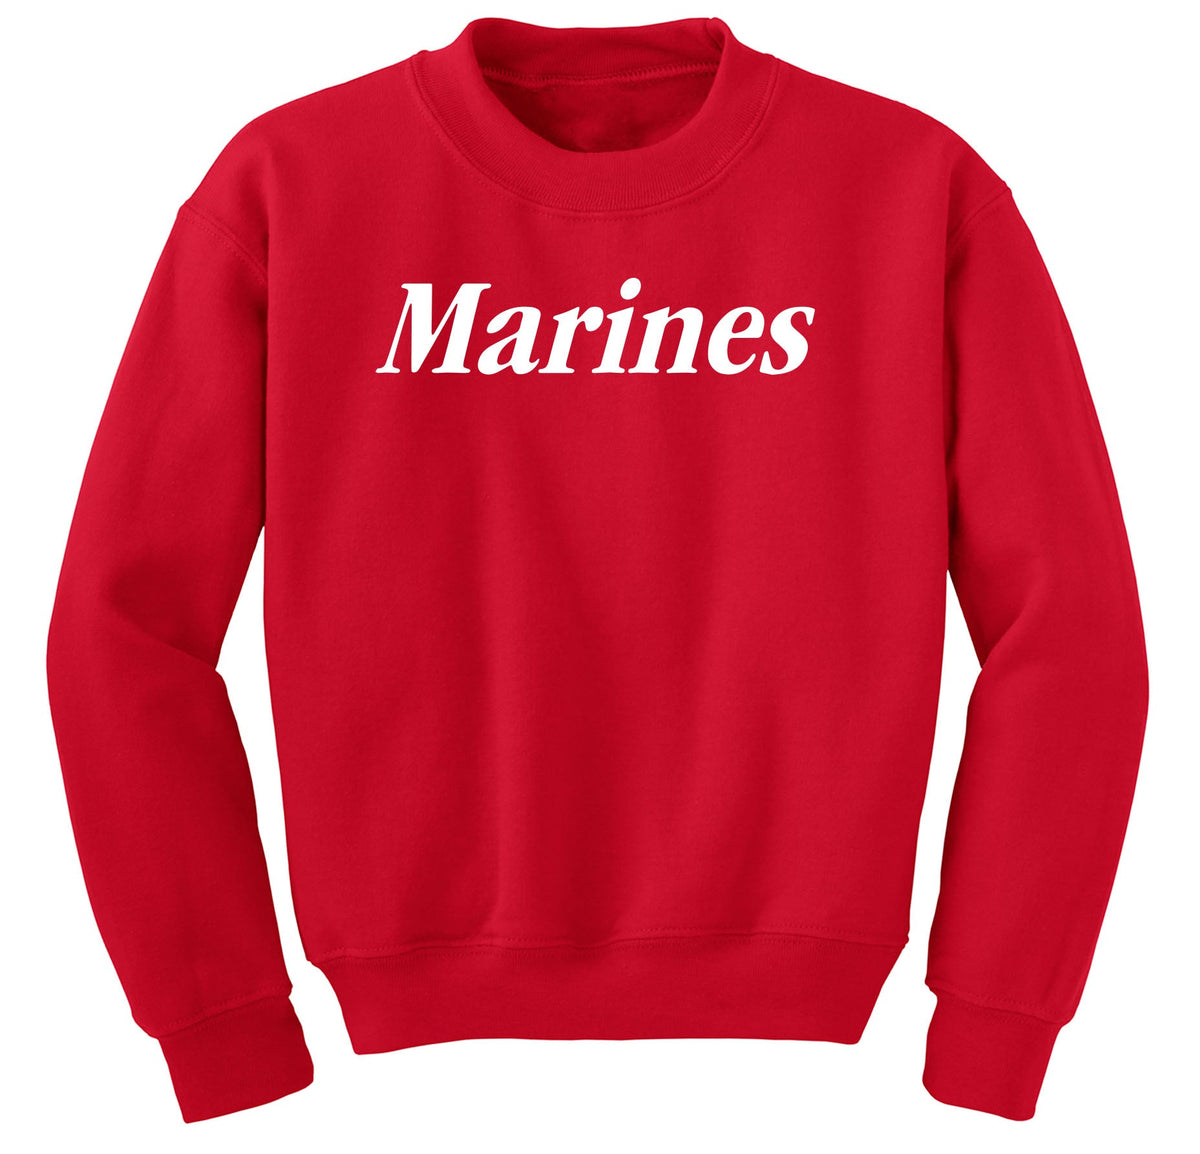 Closeout Red White Marines Sweatshirt